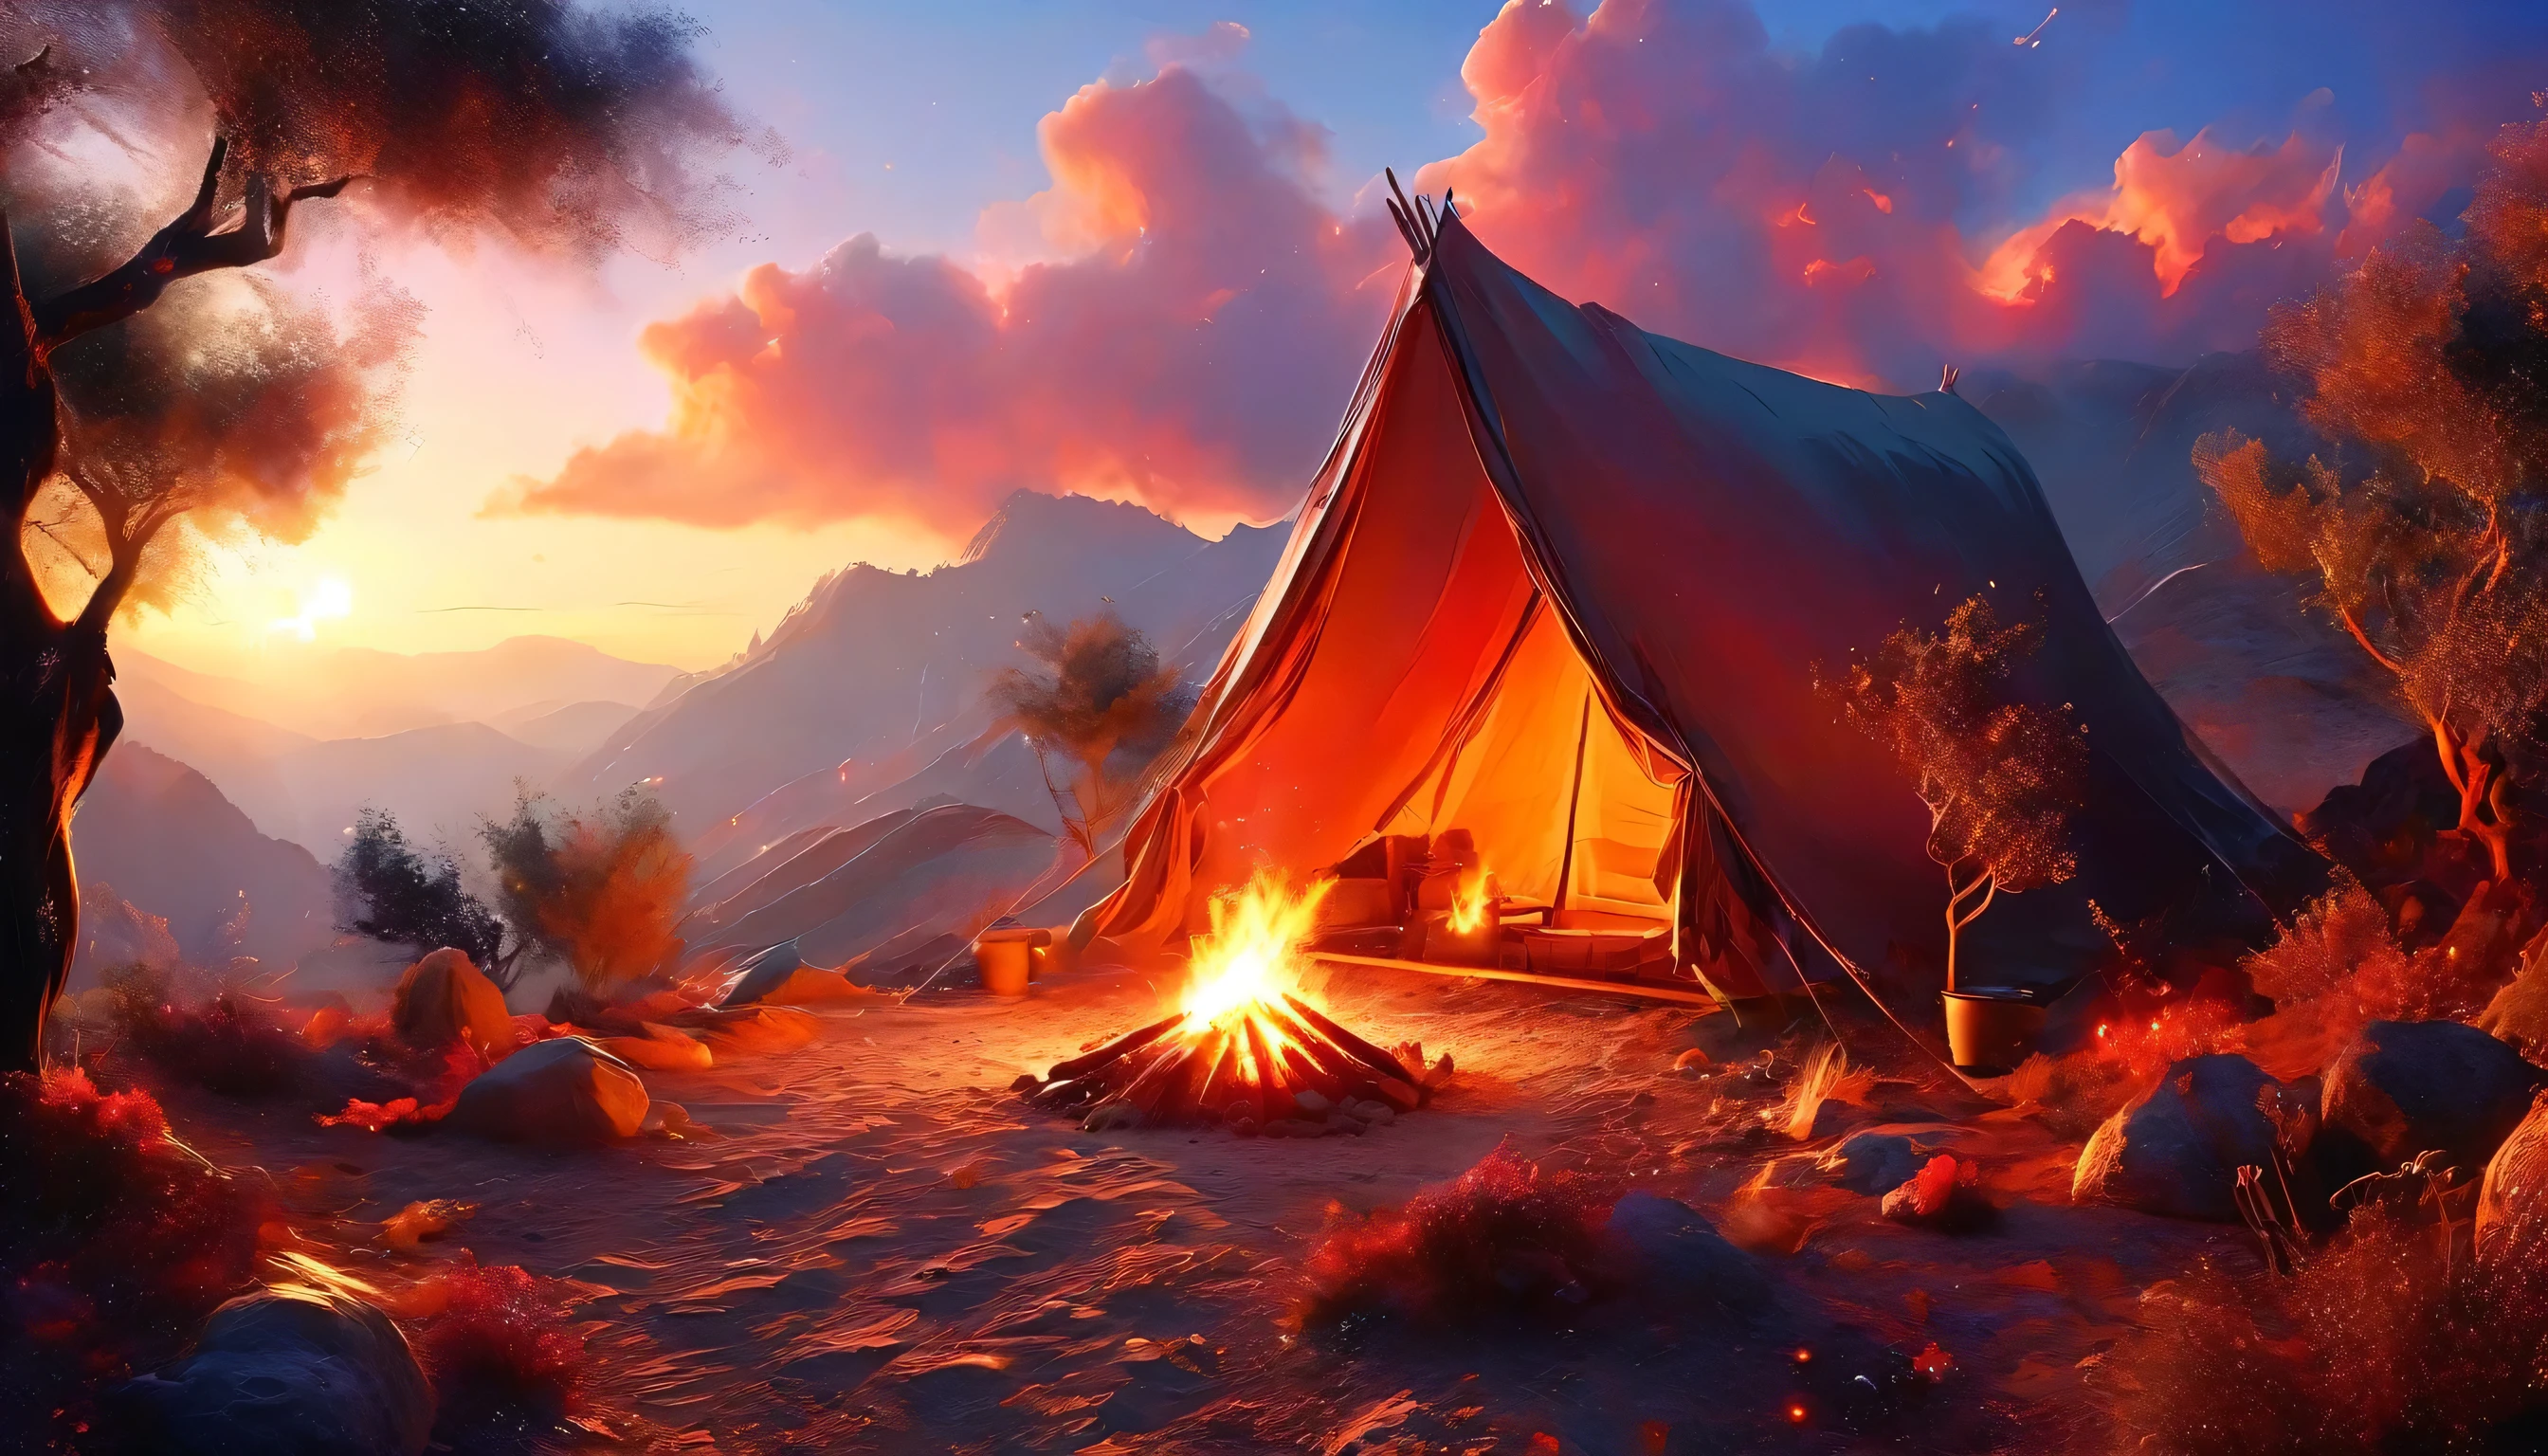 arabisch, ein Bild von einem Campingplatz (Zelt: 1.2) und Klein (Lagerfeuer: 1.3), auf einem einsamen Berggipfel, sein Sonnenuntergang der Himmel sind in verschiedenen Schattierungen von  (Rot: 1.1), (orange: 1.1), (azure: 1.1) (lila:1.1) aus dem Feuerlager steigt Rauch auf, Es gibt einen herrlichen Blick auf die Wüstenschlucht und die Schluchten, am Horizont sind spärliche Bäume, Es ist eine Zeit der Gelassenheit, Frieden, und Entspannung, beste Qualität, 16K,  Fotorealismus, Mit dem National Geographic Award ausgezeichnetes Fotoshooting, Ultraweite Aufnahme, RagingNebula, Abonnieren